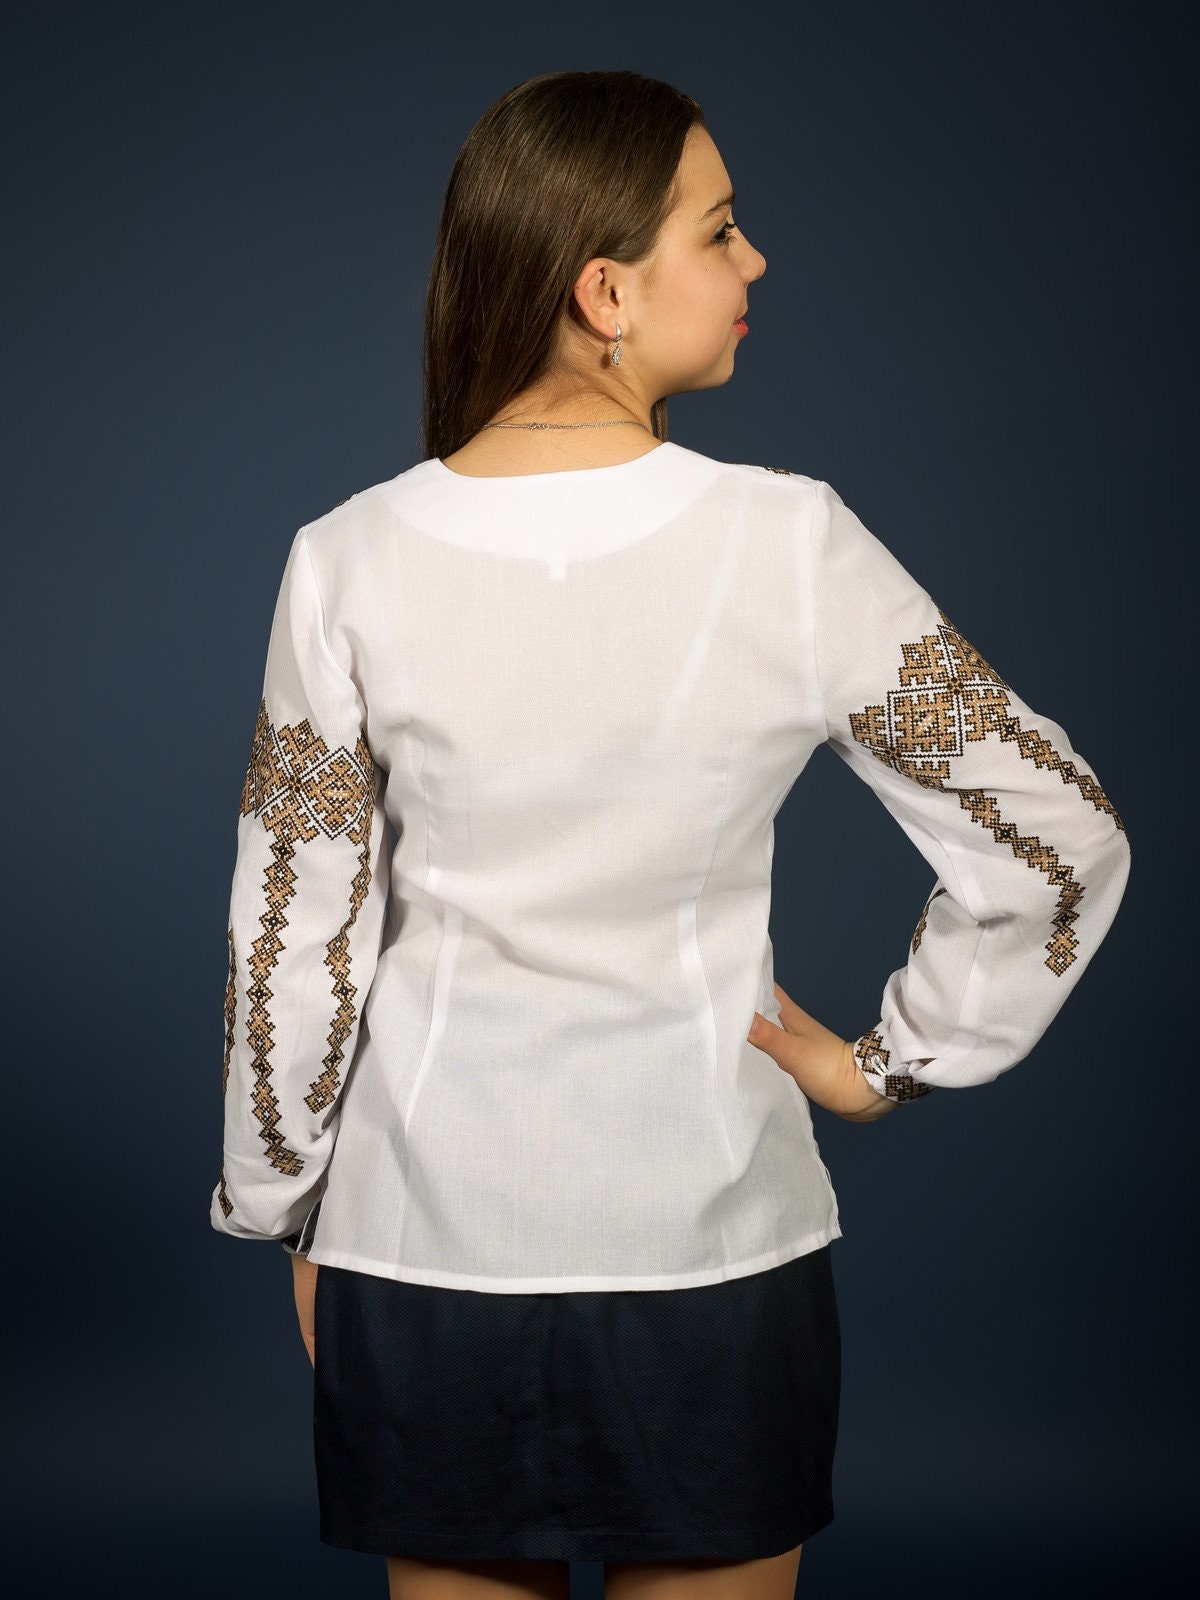 Handgemaakte blouse voor dames Het materiaal is zeer aangenaam voor het lichaam. Onyx stof Kleding Meisjeskleding Tops & T-shirts Blouses Speciaal voor jou gemaakt handborduurwerk Vyshyvanka 